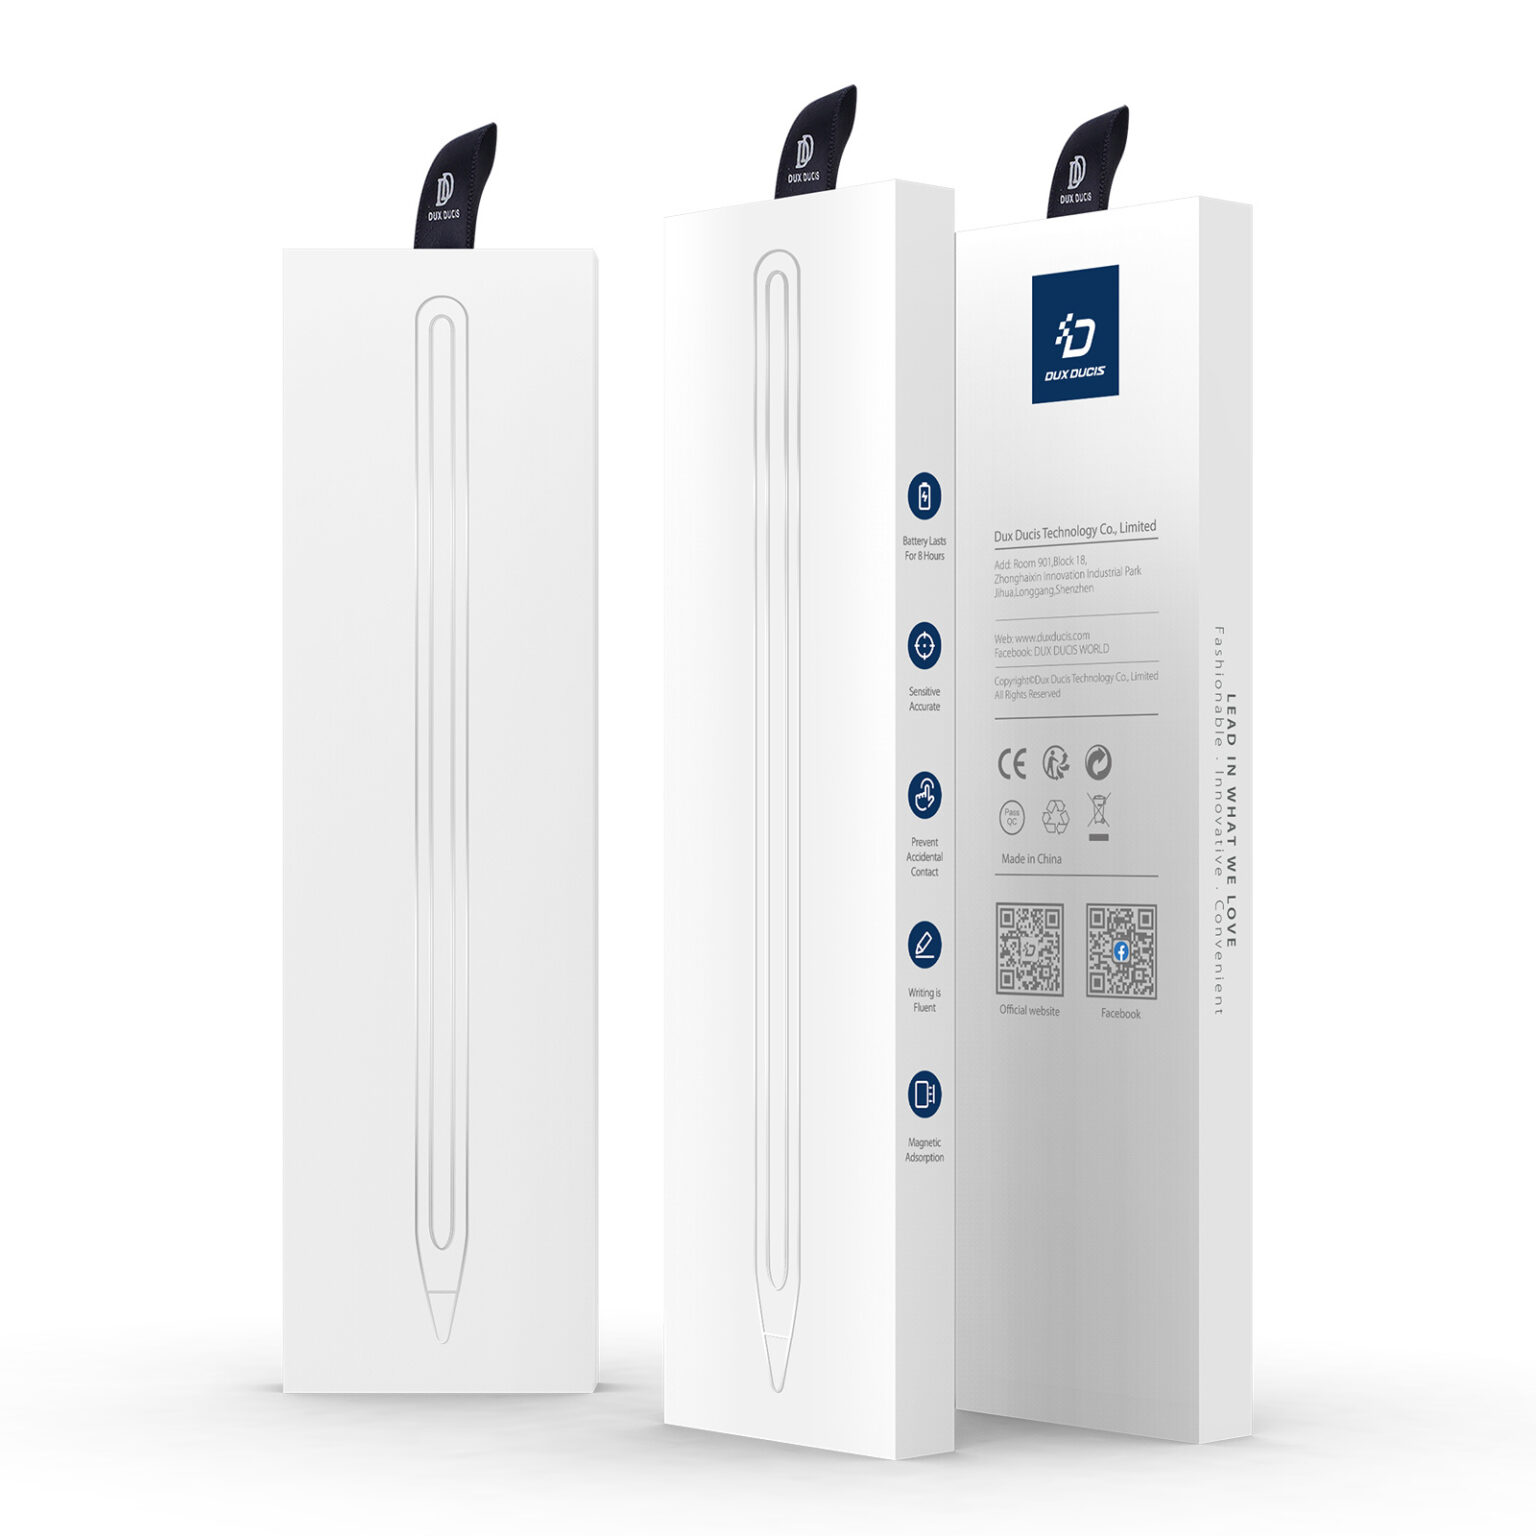 Bút cảm ứng Dux Dicis SP-02 Stylus Pen dành cho iPad Pro/ Ipad Air/ Ipad Mini/ Ipad Gen 6,7,8,9,10 - Hàng chính hãng